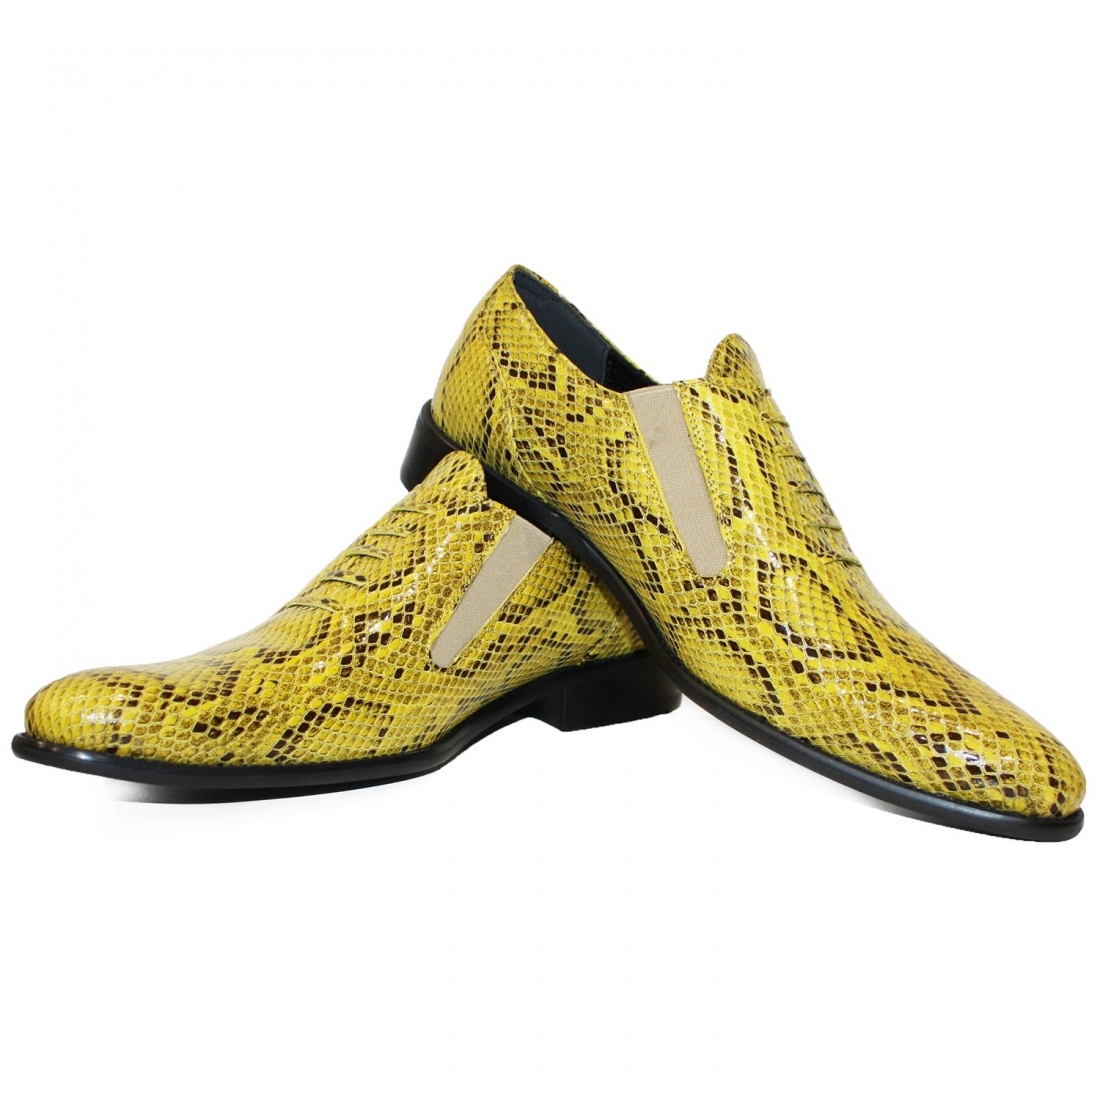 Modello Bucketto - Zapatillas Sin Cordones - Handmade Colorful Italian Leather Shoes